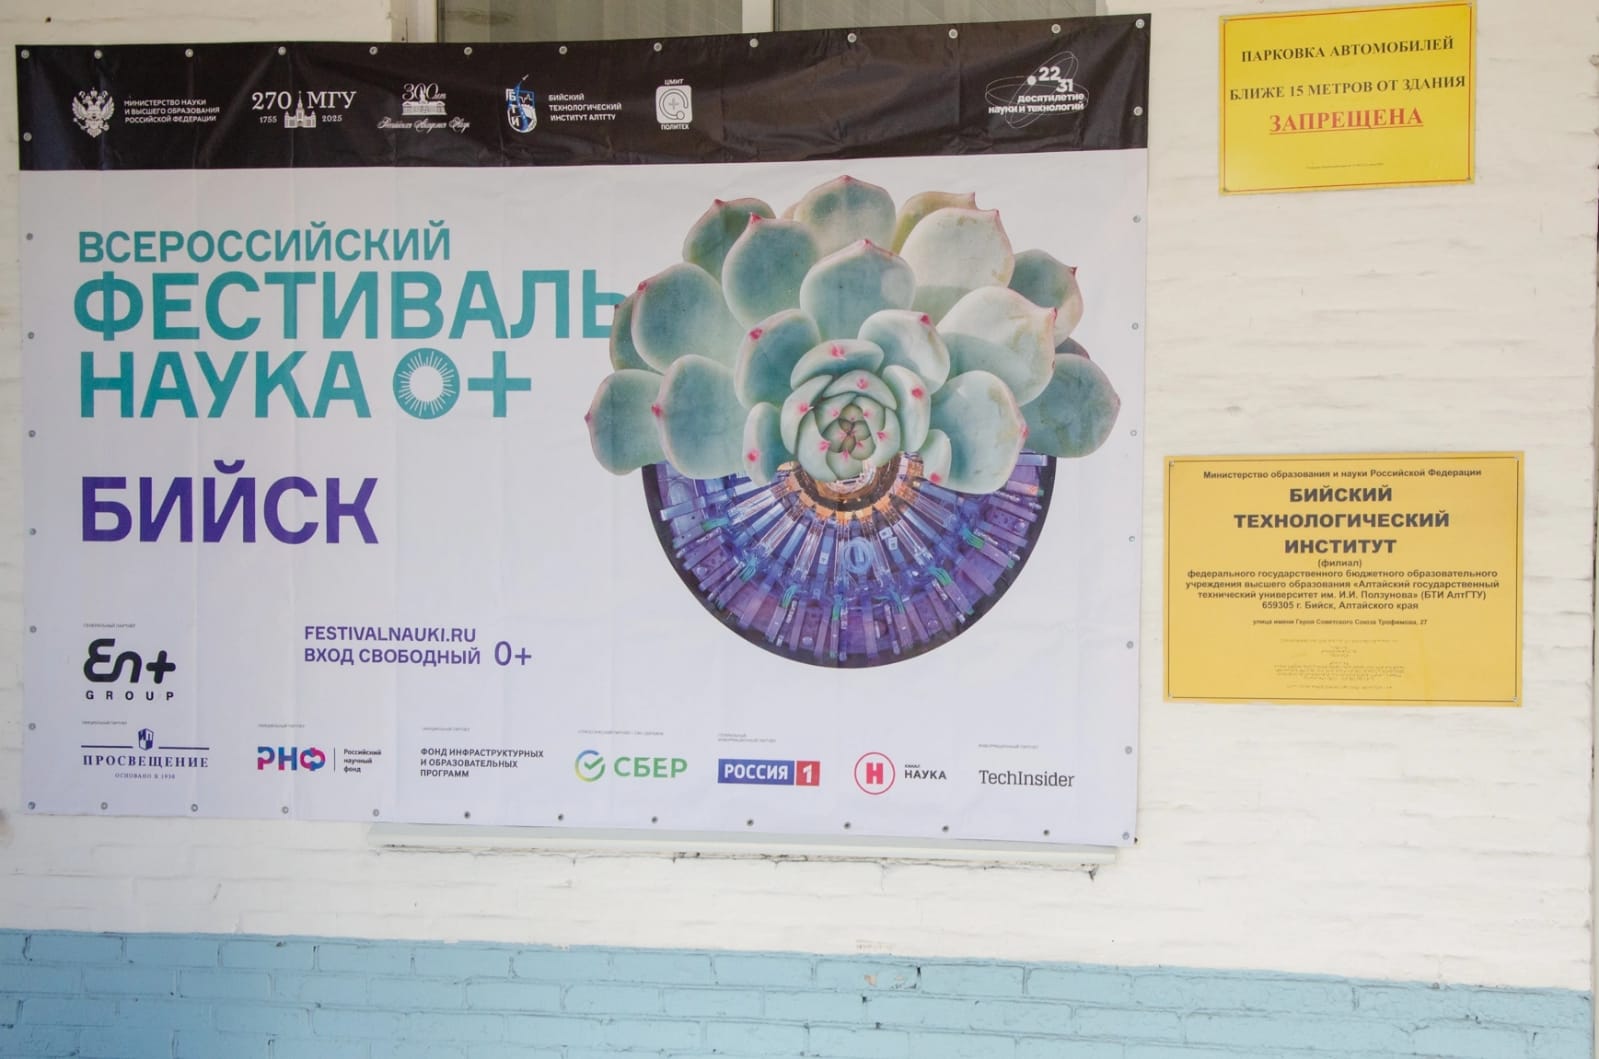 ЦМИТ «Политех» получил благодарности за участие во Всероссийском фестивале науки NAUKA 0+